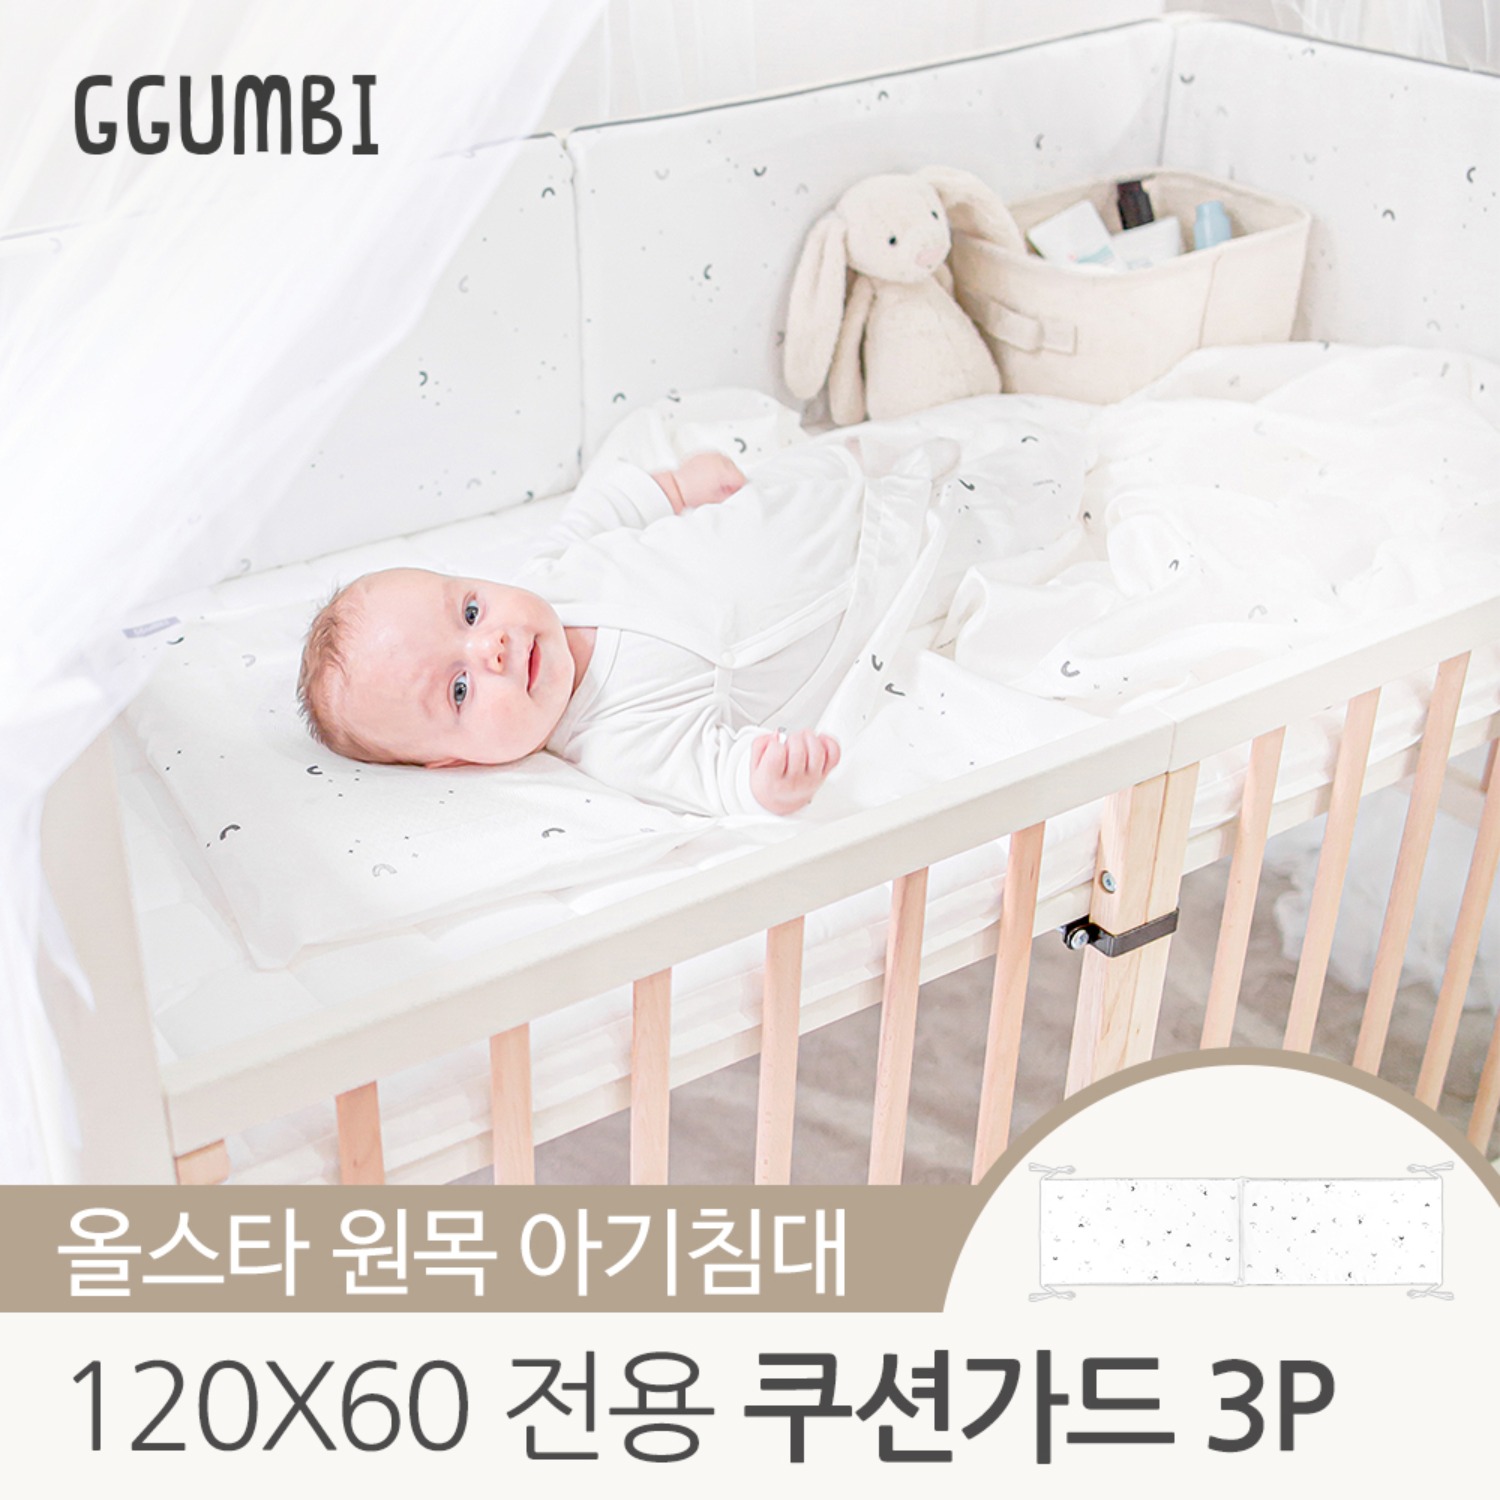 [꿈비] 올스타 원목 아기침대 전용 쿠션가드 3p